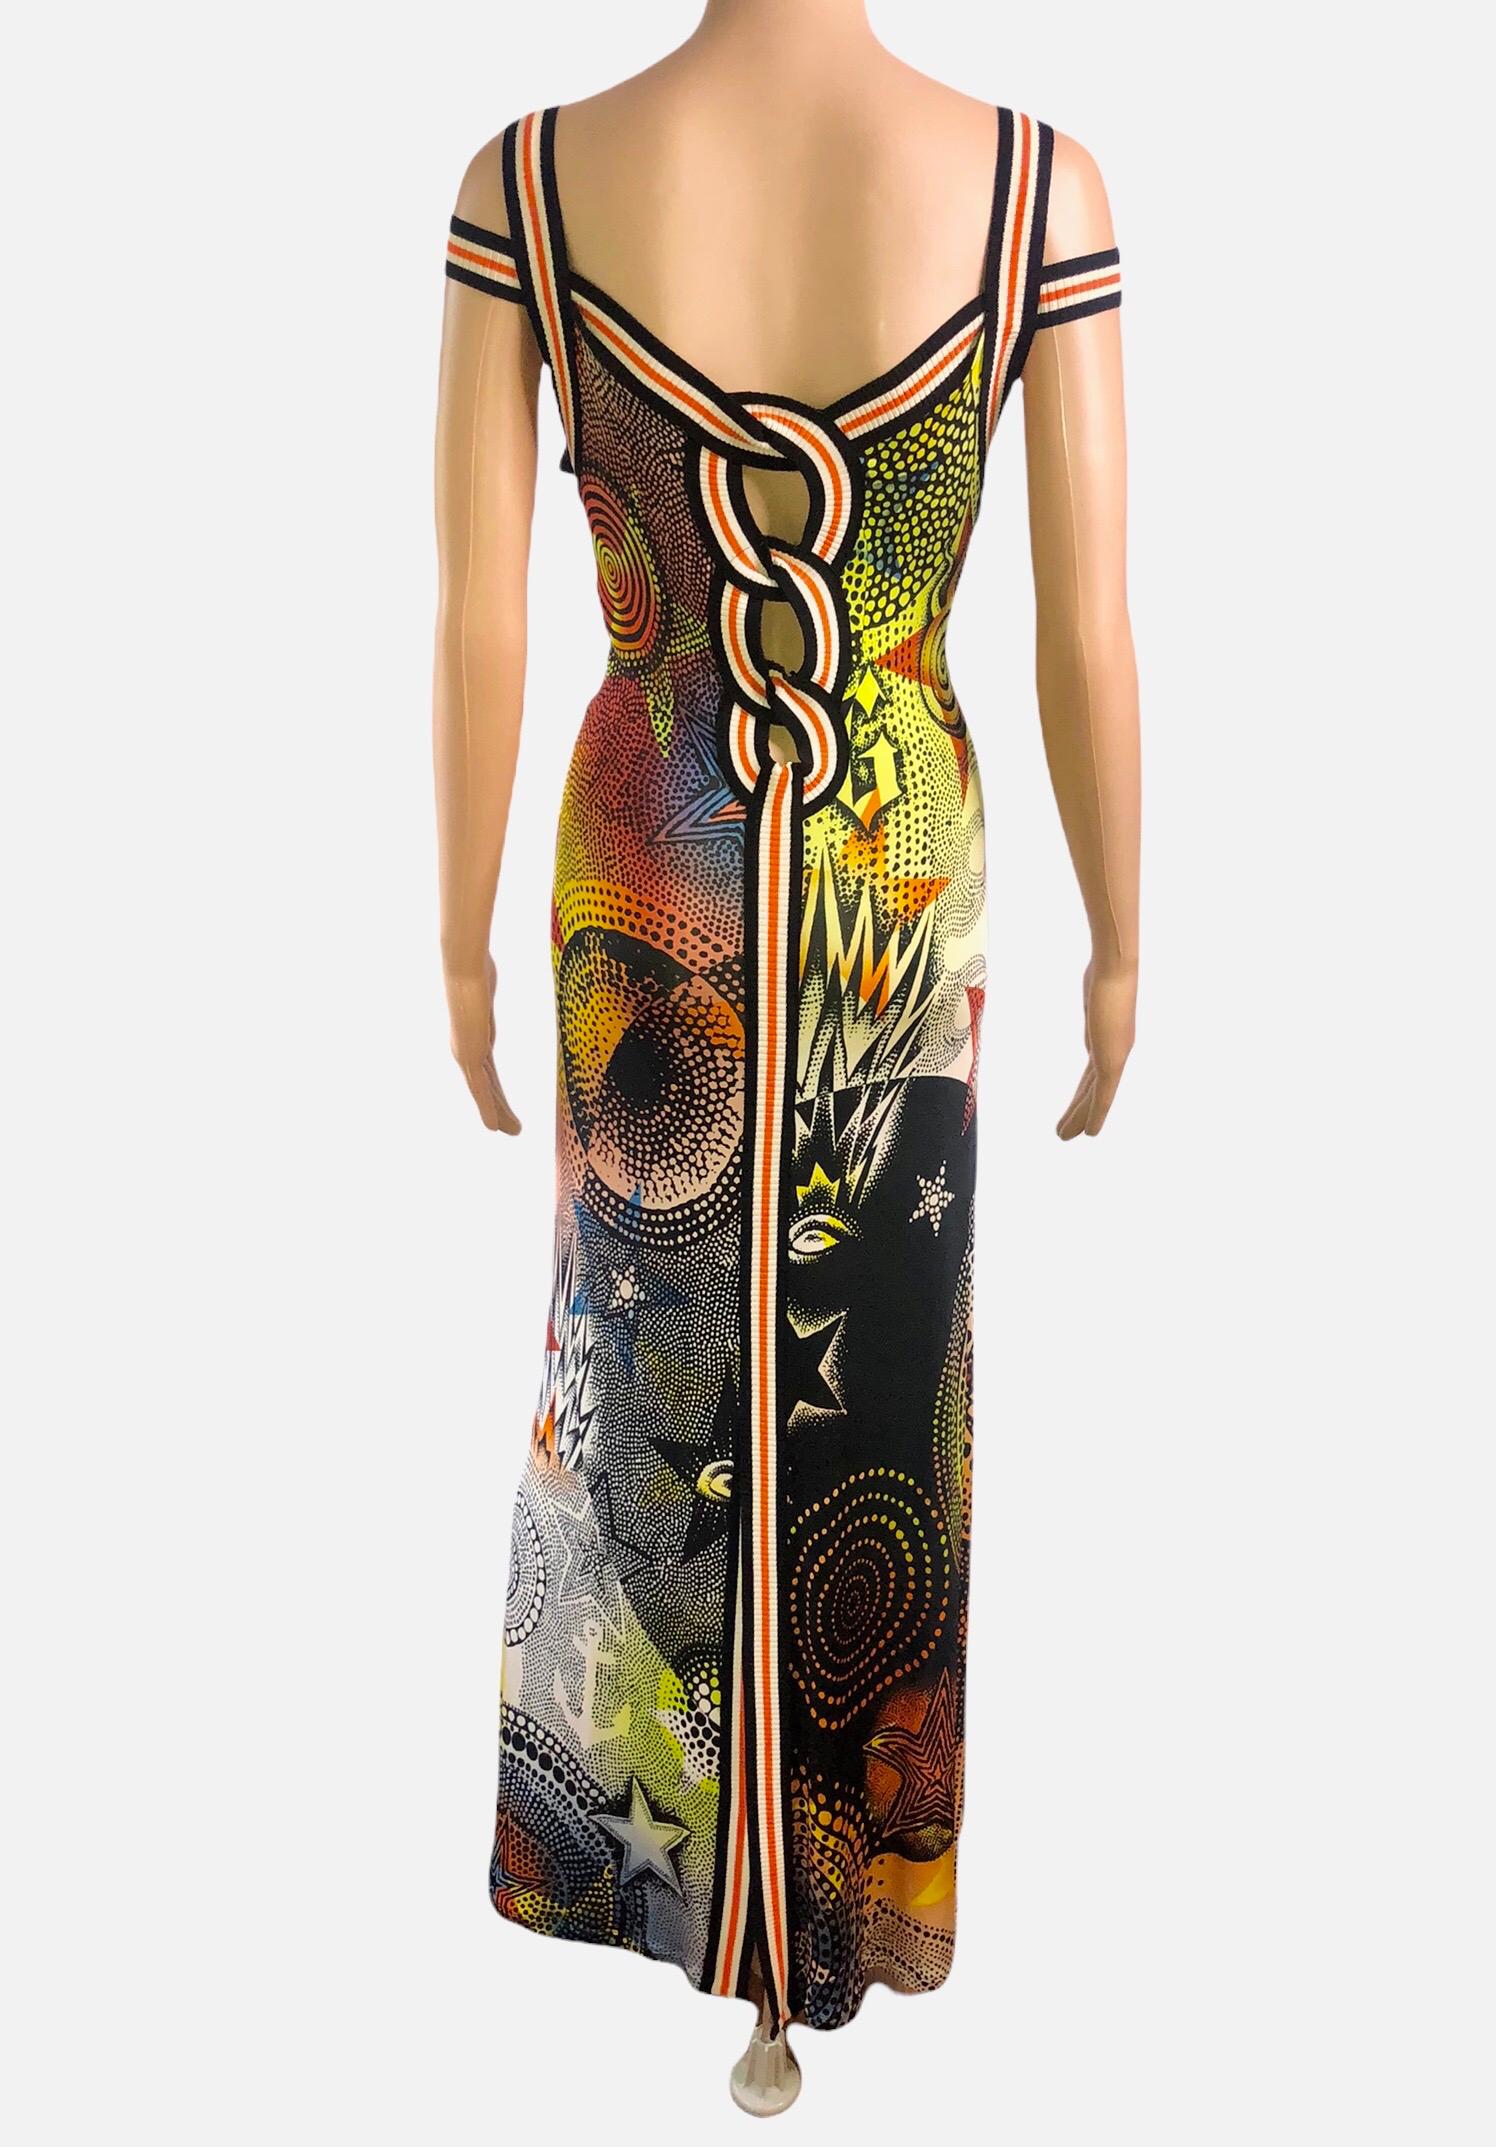 Jean Paul Gaultier S/S 2007 Star Print Cutout Bodycon Maxi Dress 3